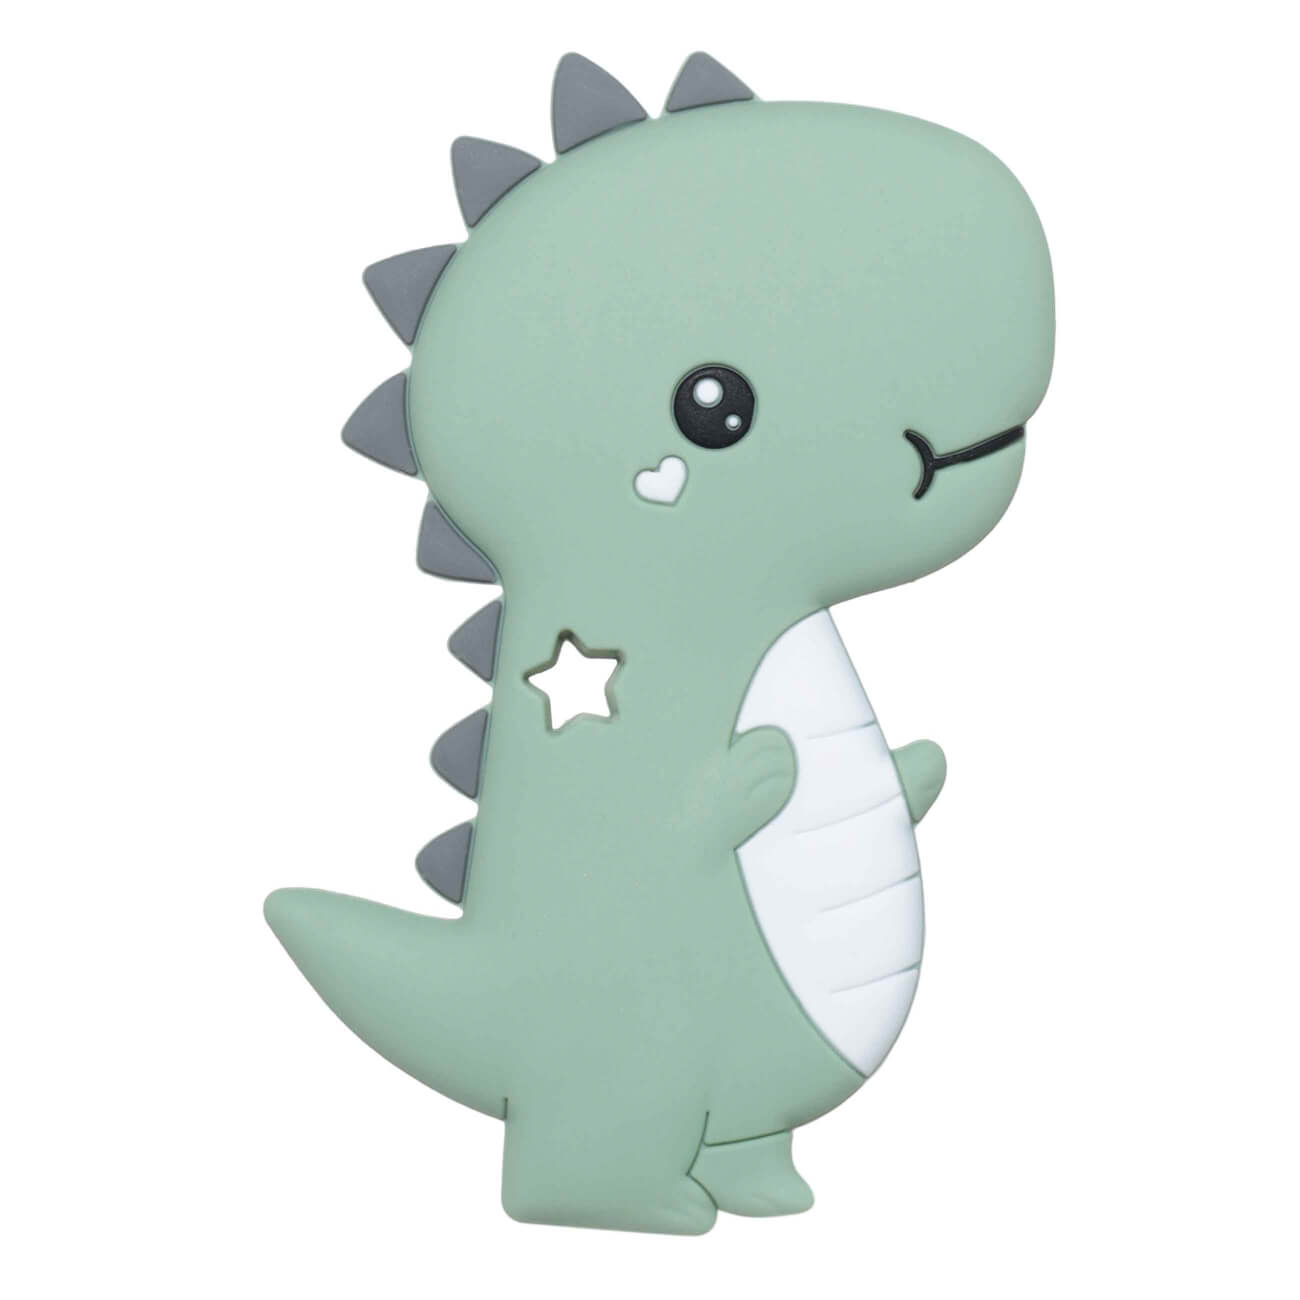 Игрушка-прорезыватель, 10 см, силикон, зеленый, Дракоша, Kiddy dragon прорезыватель игрушка силиконовый на держателе лисенок